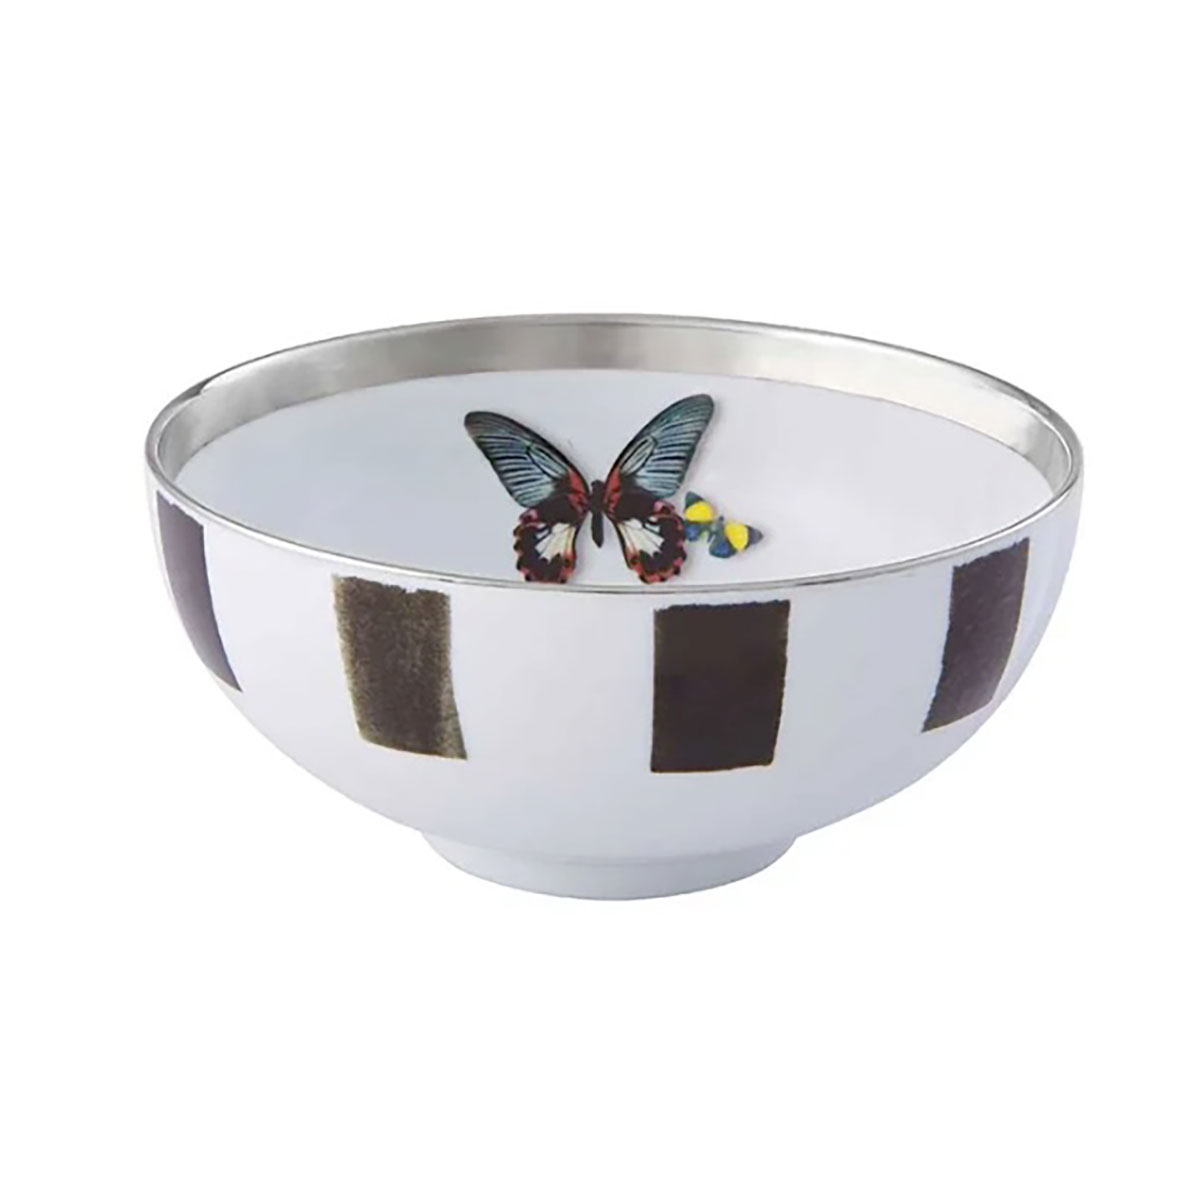 Vista Alegre Porcelain Christian Lacroix - Sol Y Sombra Soup Bowl